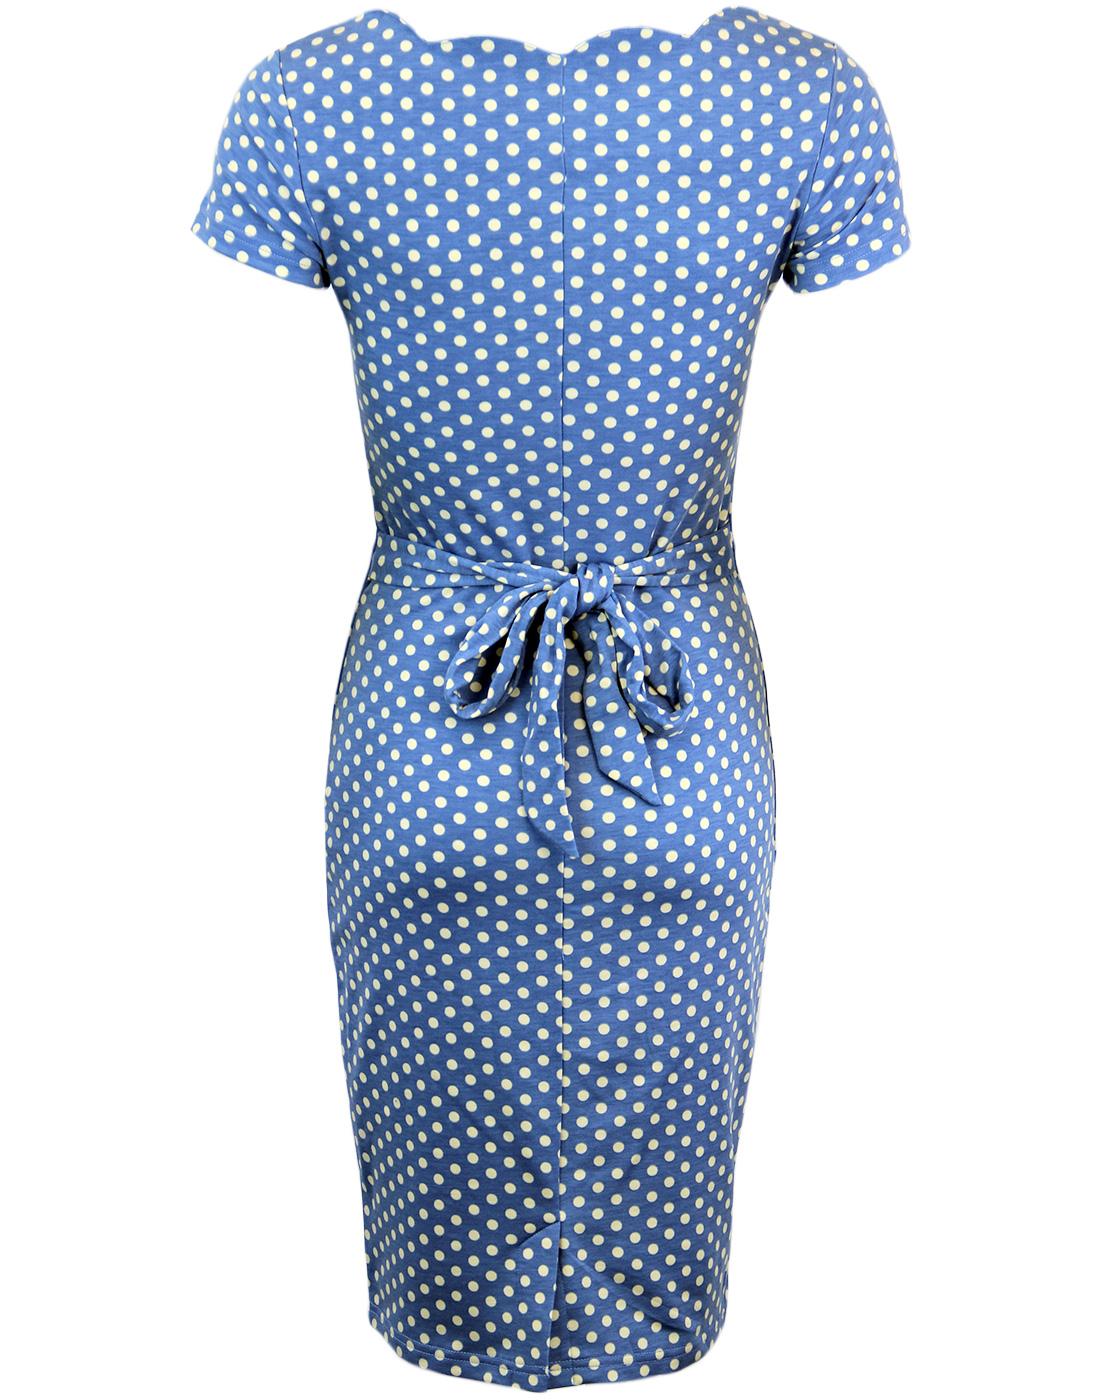 FEVER Millie Retro 60s Scalloped Polka Dot Dress in Blue/White